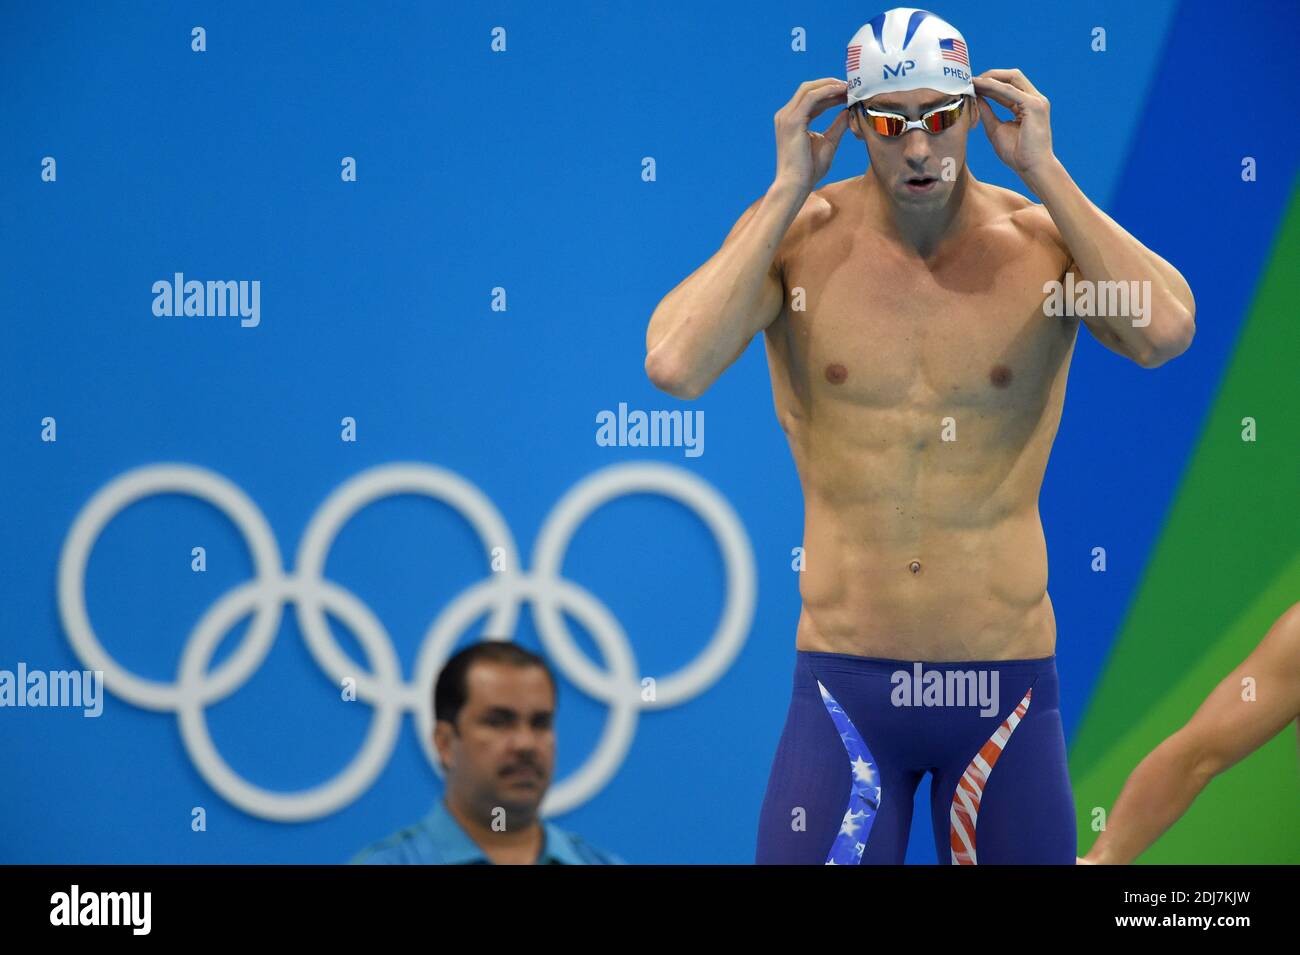 Michael Phelps compite en la competencia de natación día 3 en los Juegos  Olímpicos de Río 2016 el 7 de agosto de 2016 en Río de Janeiro, Brasil.  Foto de Lionel Hahn/